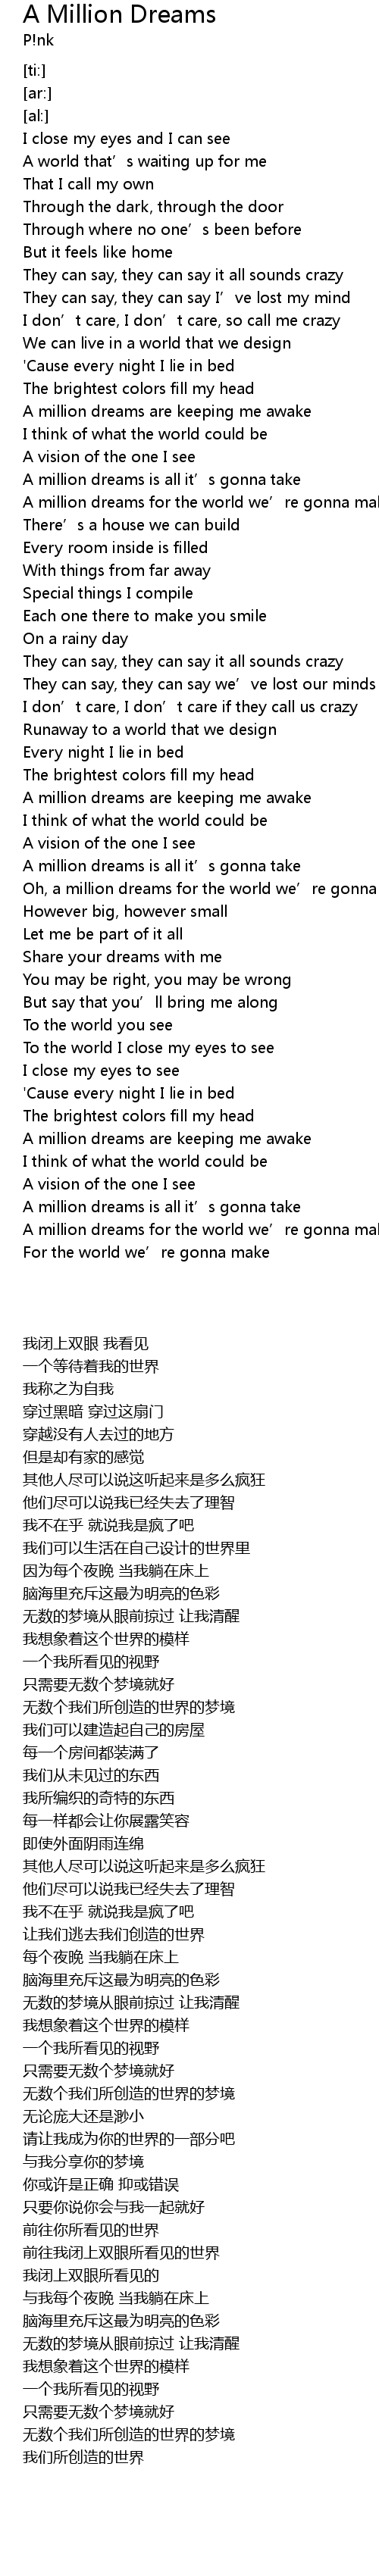 A million dreams lyrics